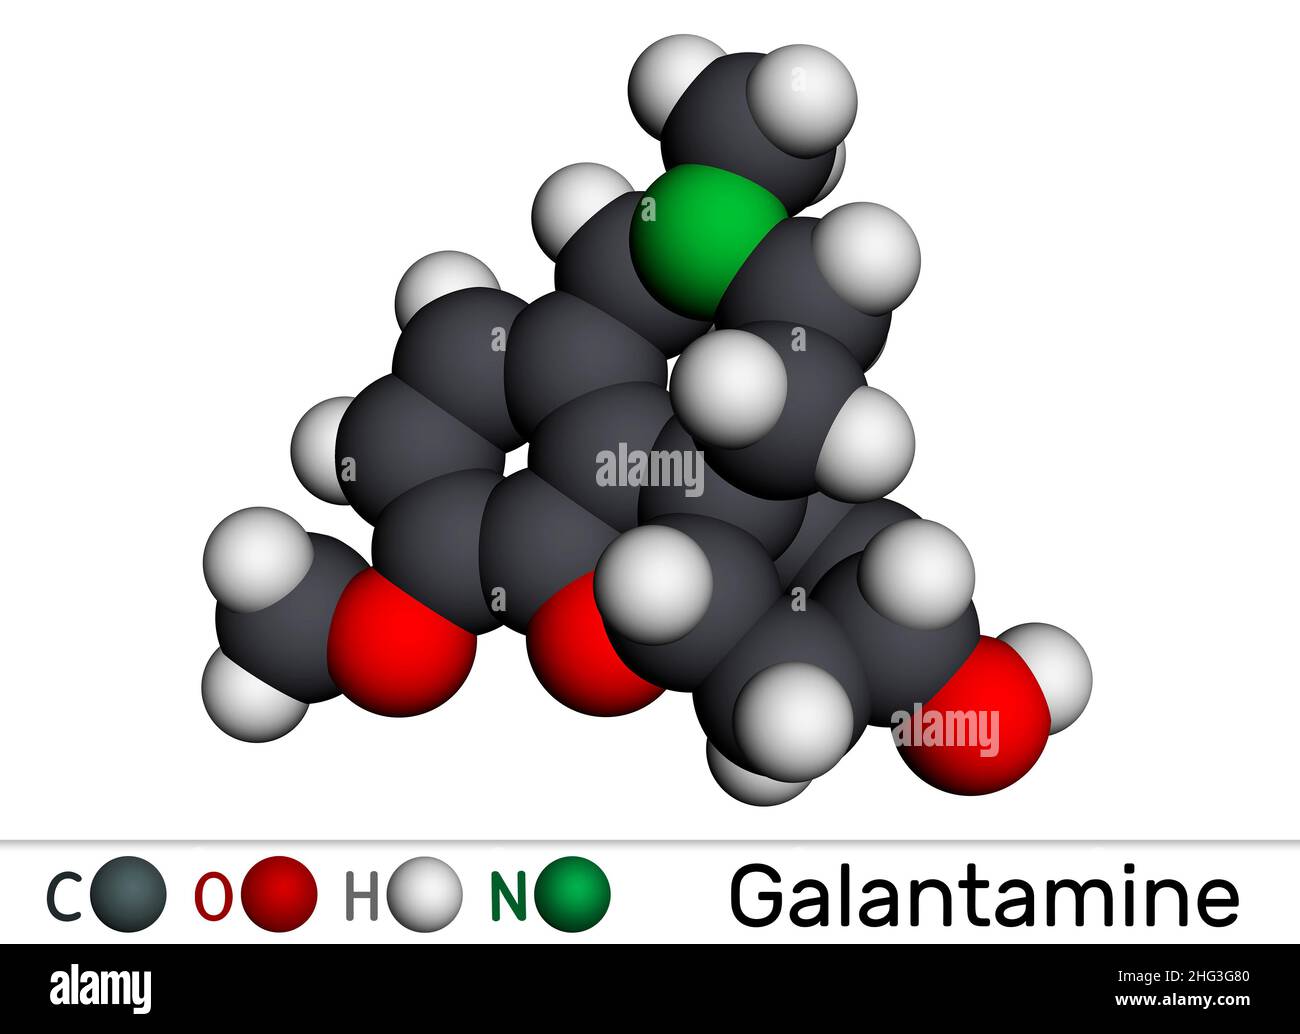 Galantamin, Molekül. Es ist ein tertiäres Alkaloid, das zur Bekämpfung von Demenz, Alzheimer, verwendet wird. Molekularmodell. 3D Rendern. Abbildung Stockfoto